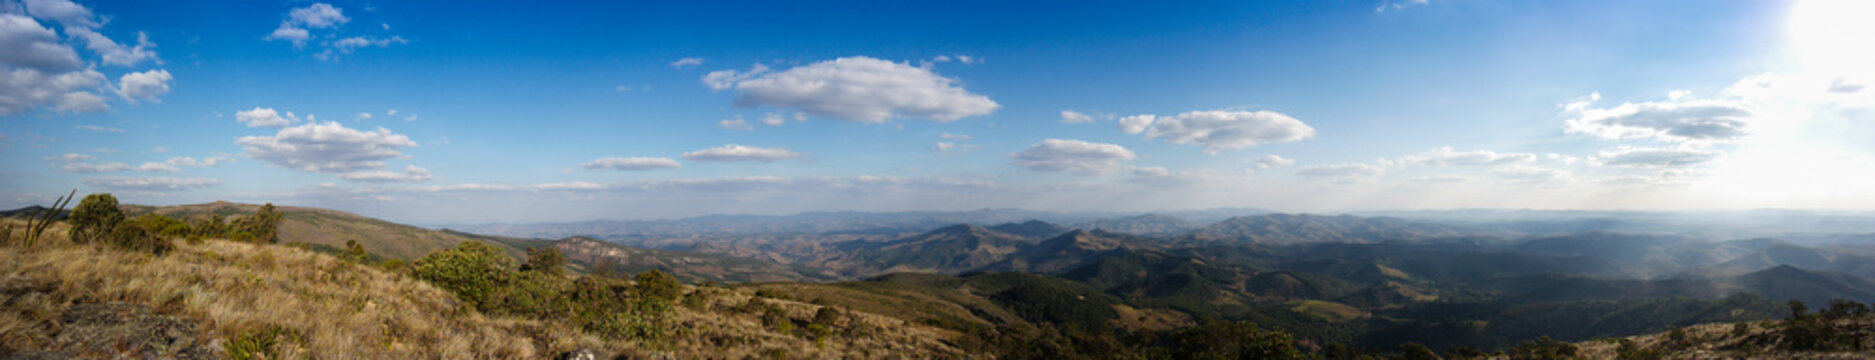 Panoramic image - Hills, horizon, sky and beautiful landscape - Montanhas, horizonte e bela paisagem © Leonardo Araújo